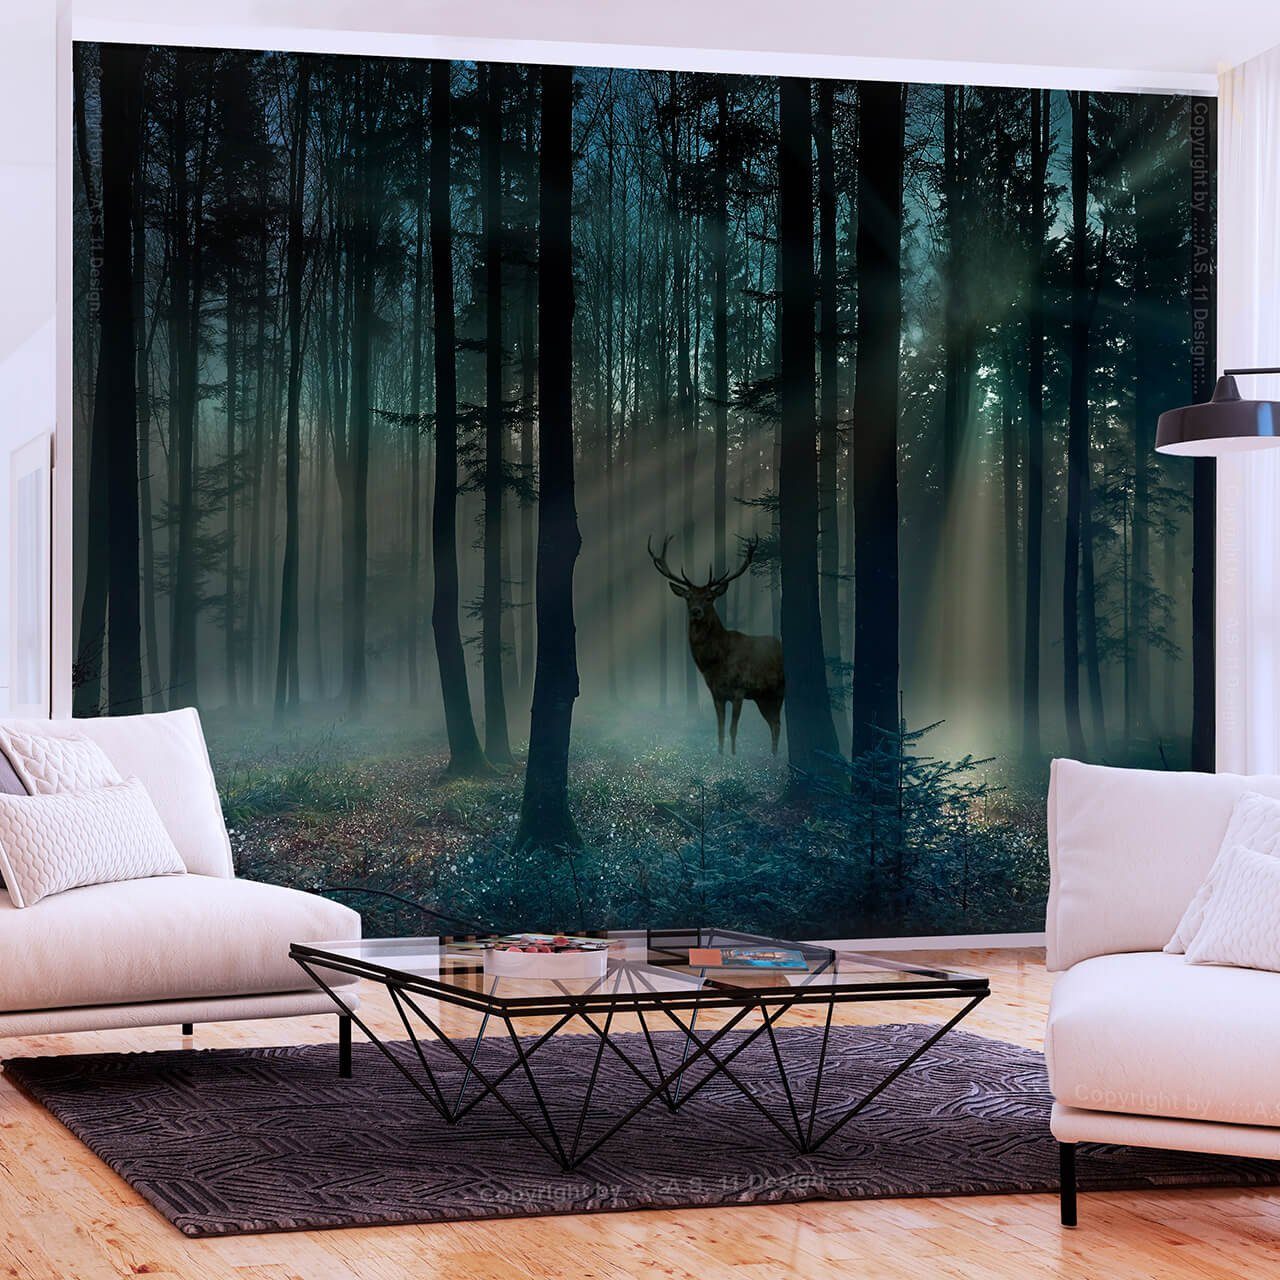 KUNSTLOFT Vliestapete Mystical Forest - Third Variant 0.98x0.7 m, matt, lichtbeständige Design Tapete